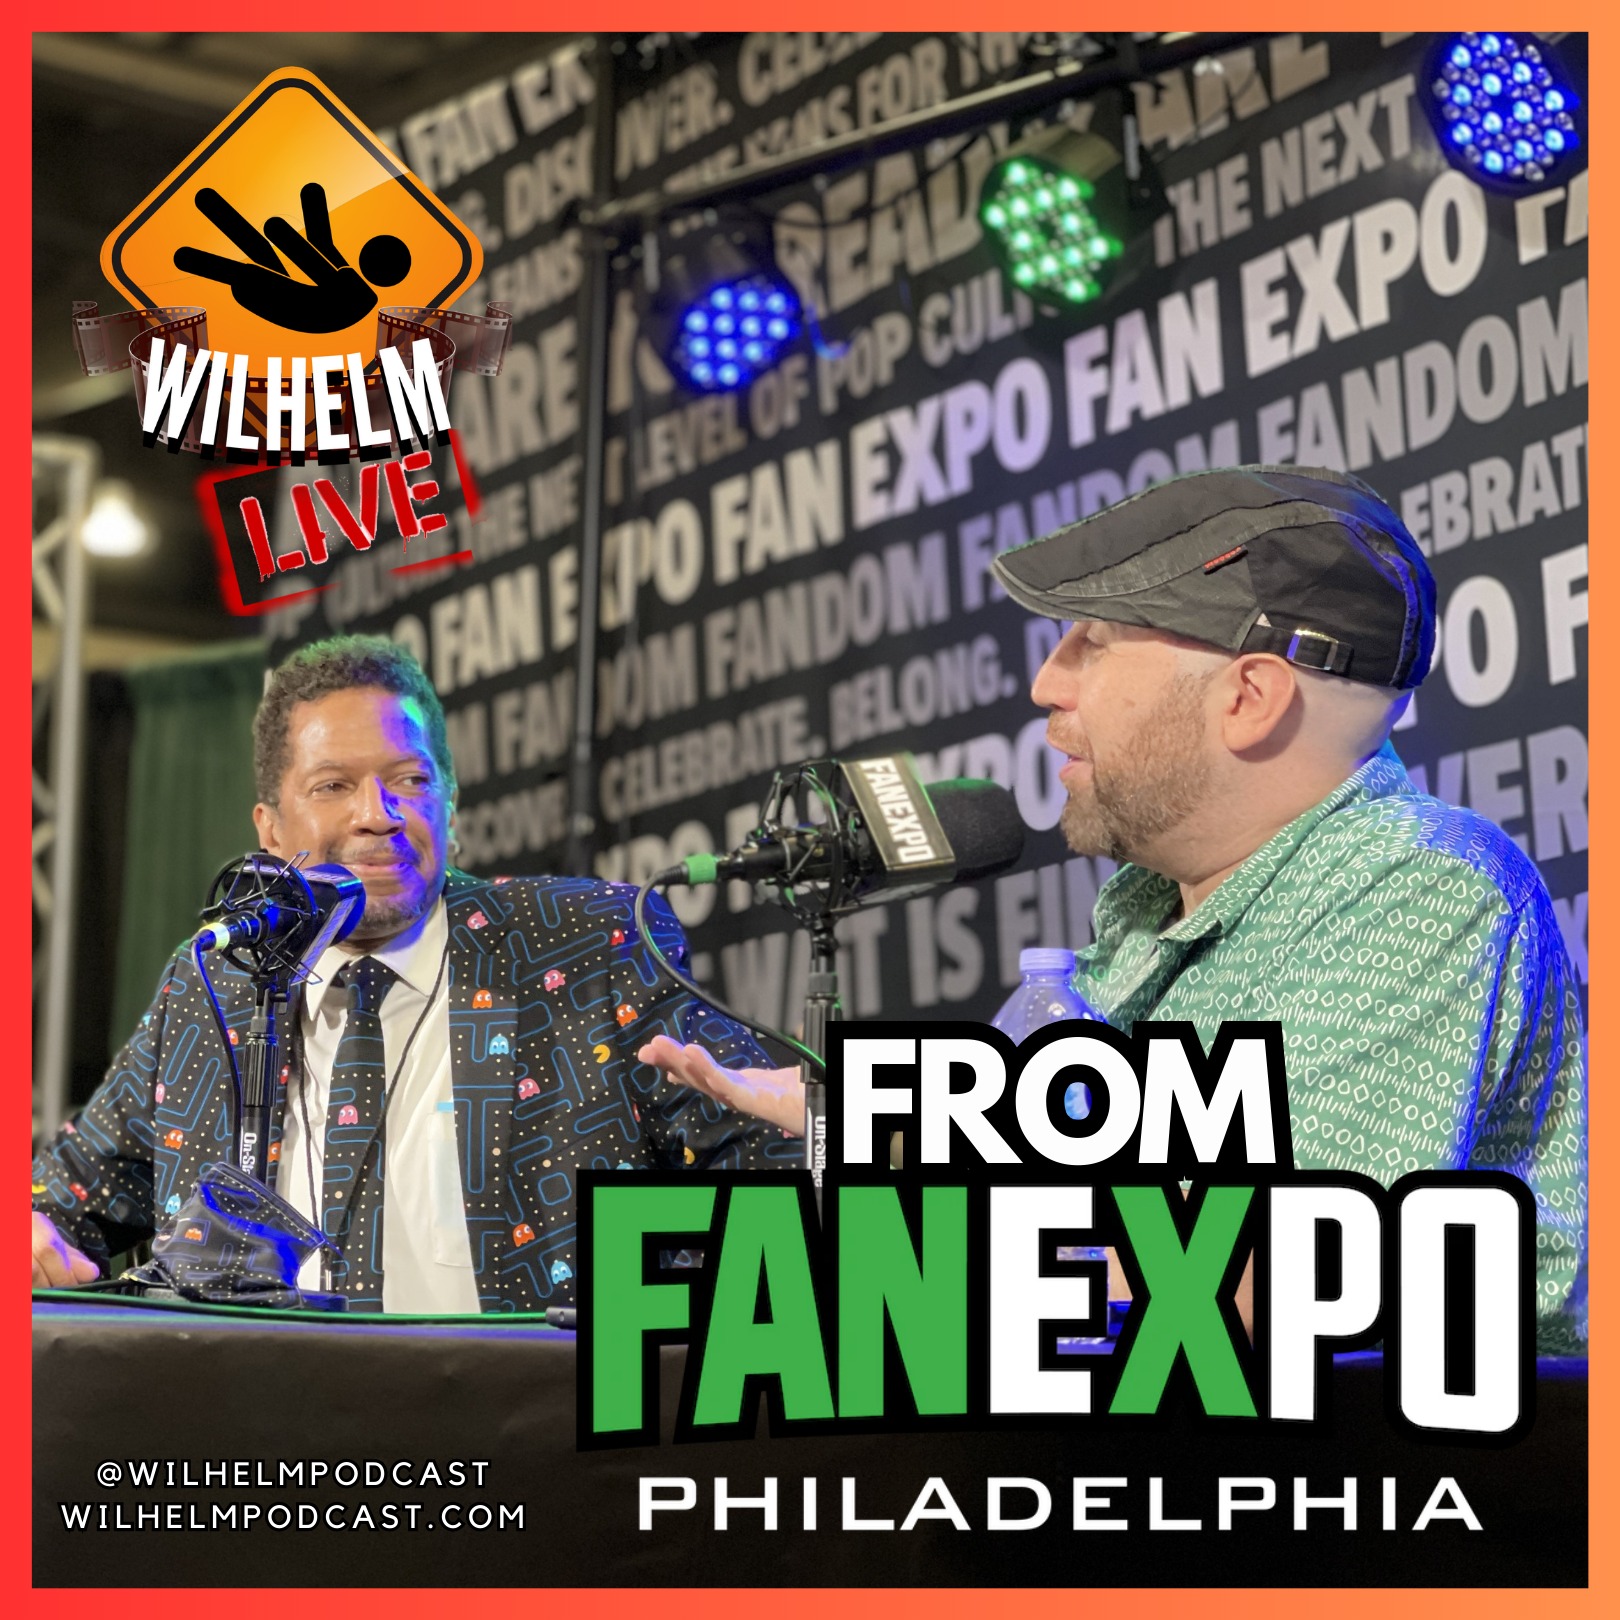 Wilhelm LIVE from FanExpo Philadelphia!